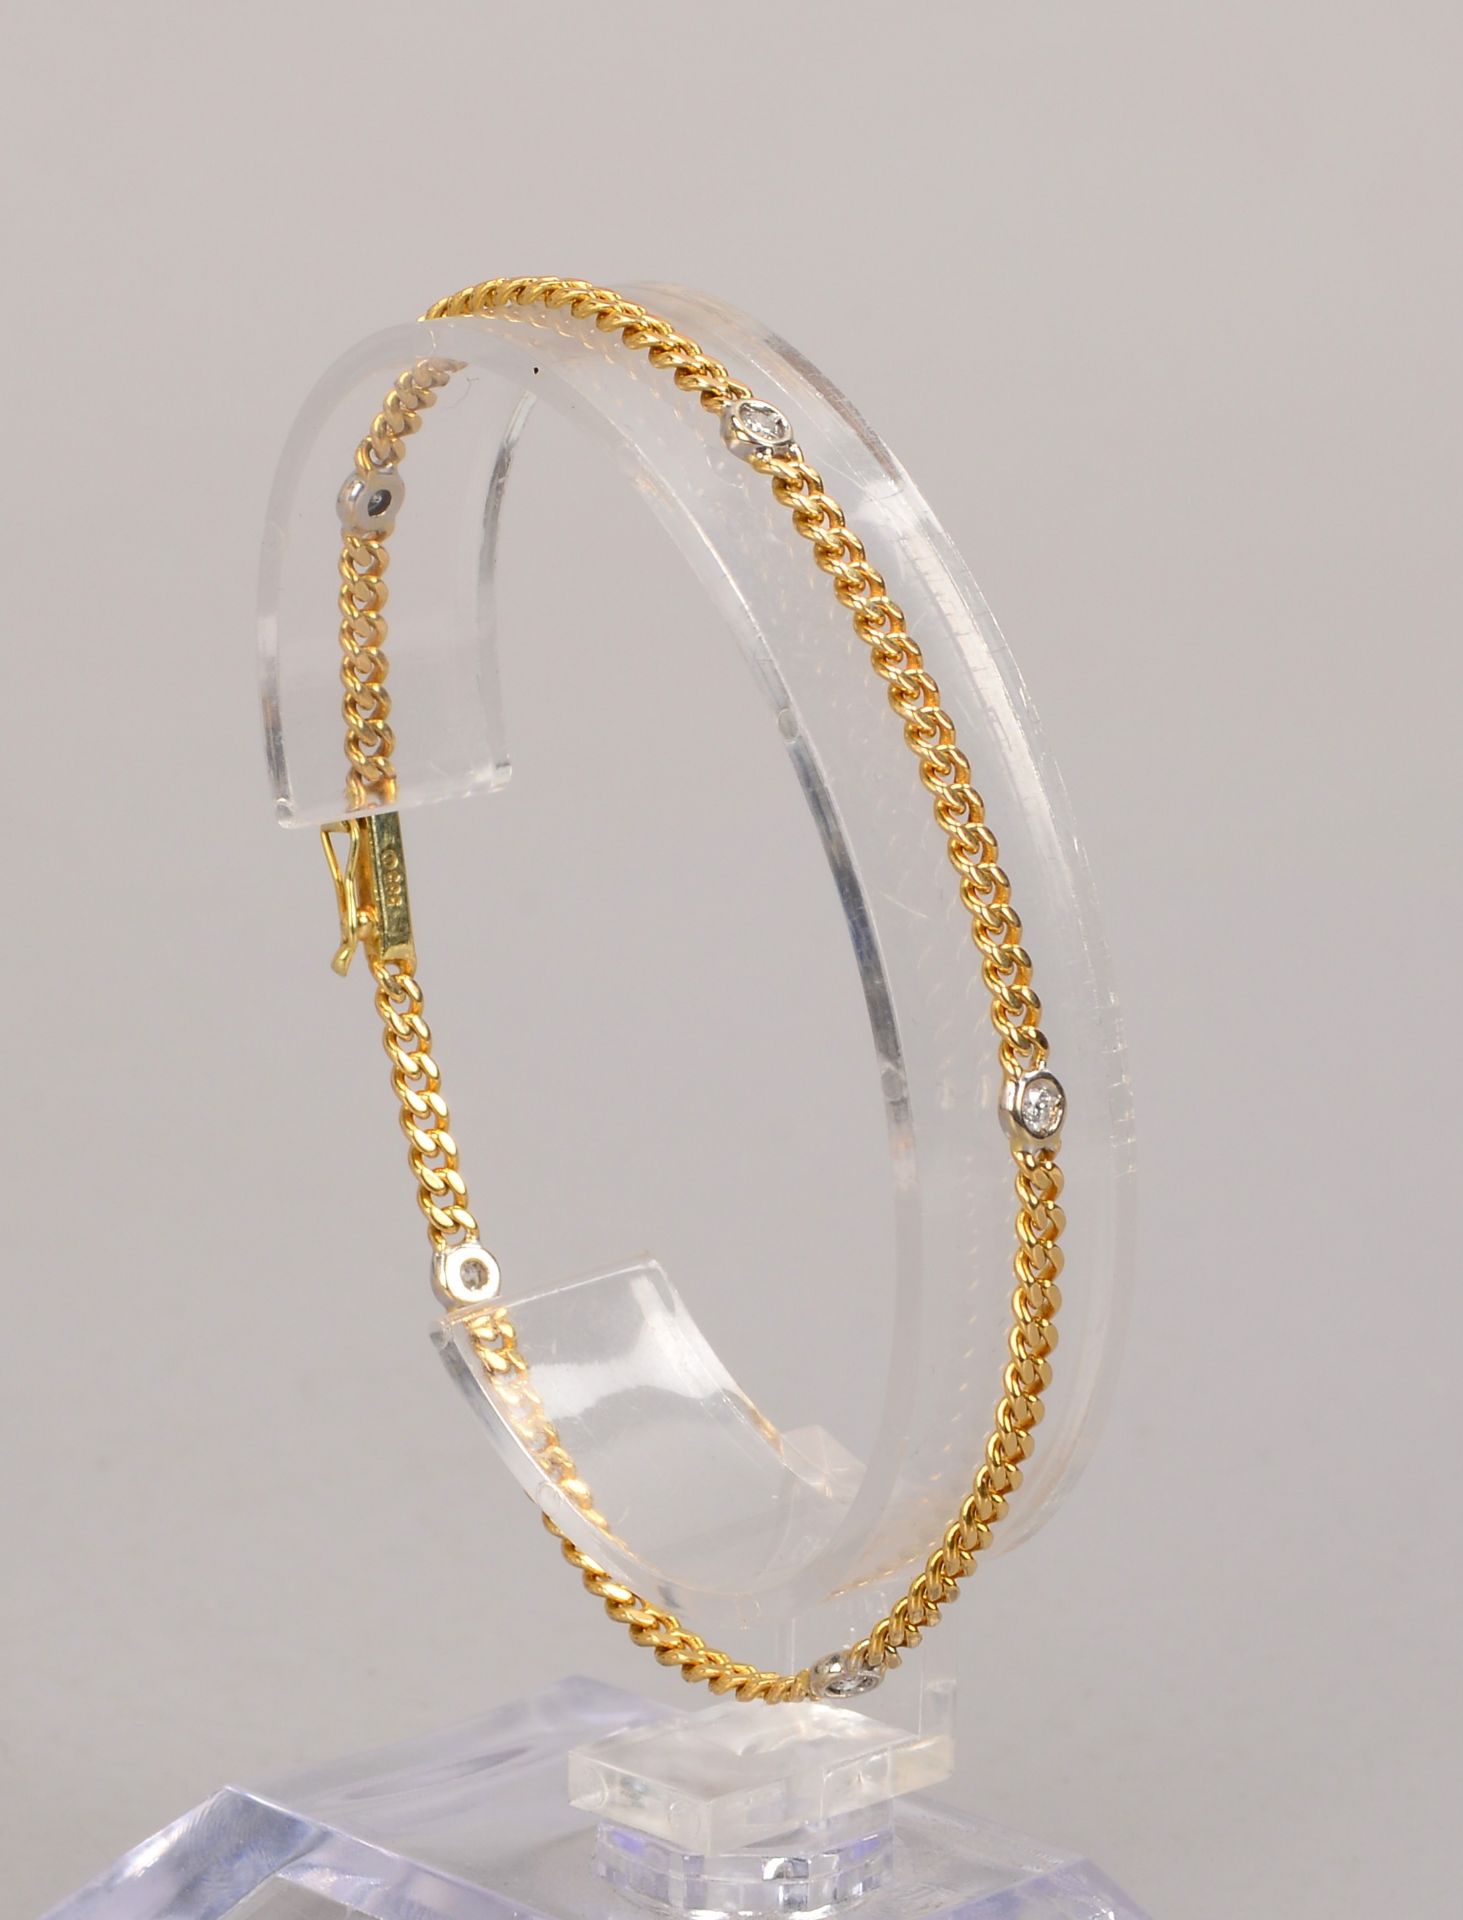 Armband, 585 GG (gez.), besetzt mit 5x kleinen Brillanten, mit Steckschliesse, Laenge 18,5 cm, Gewic